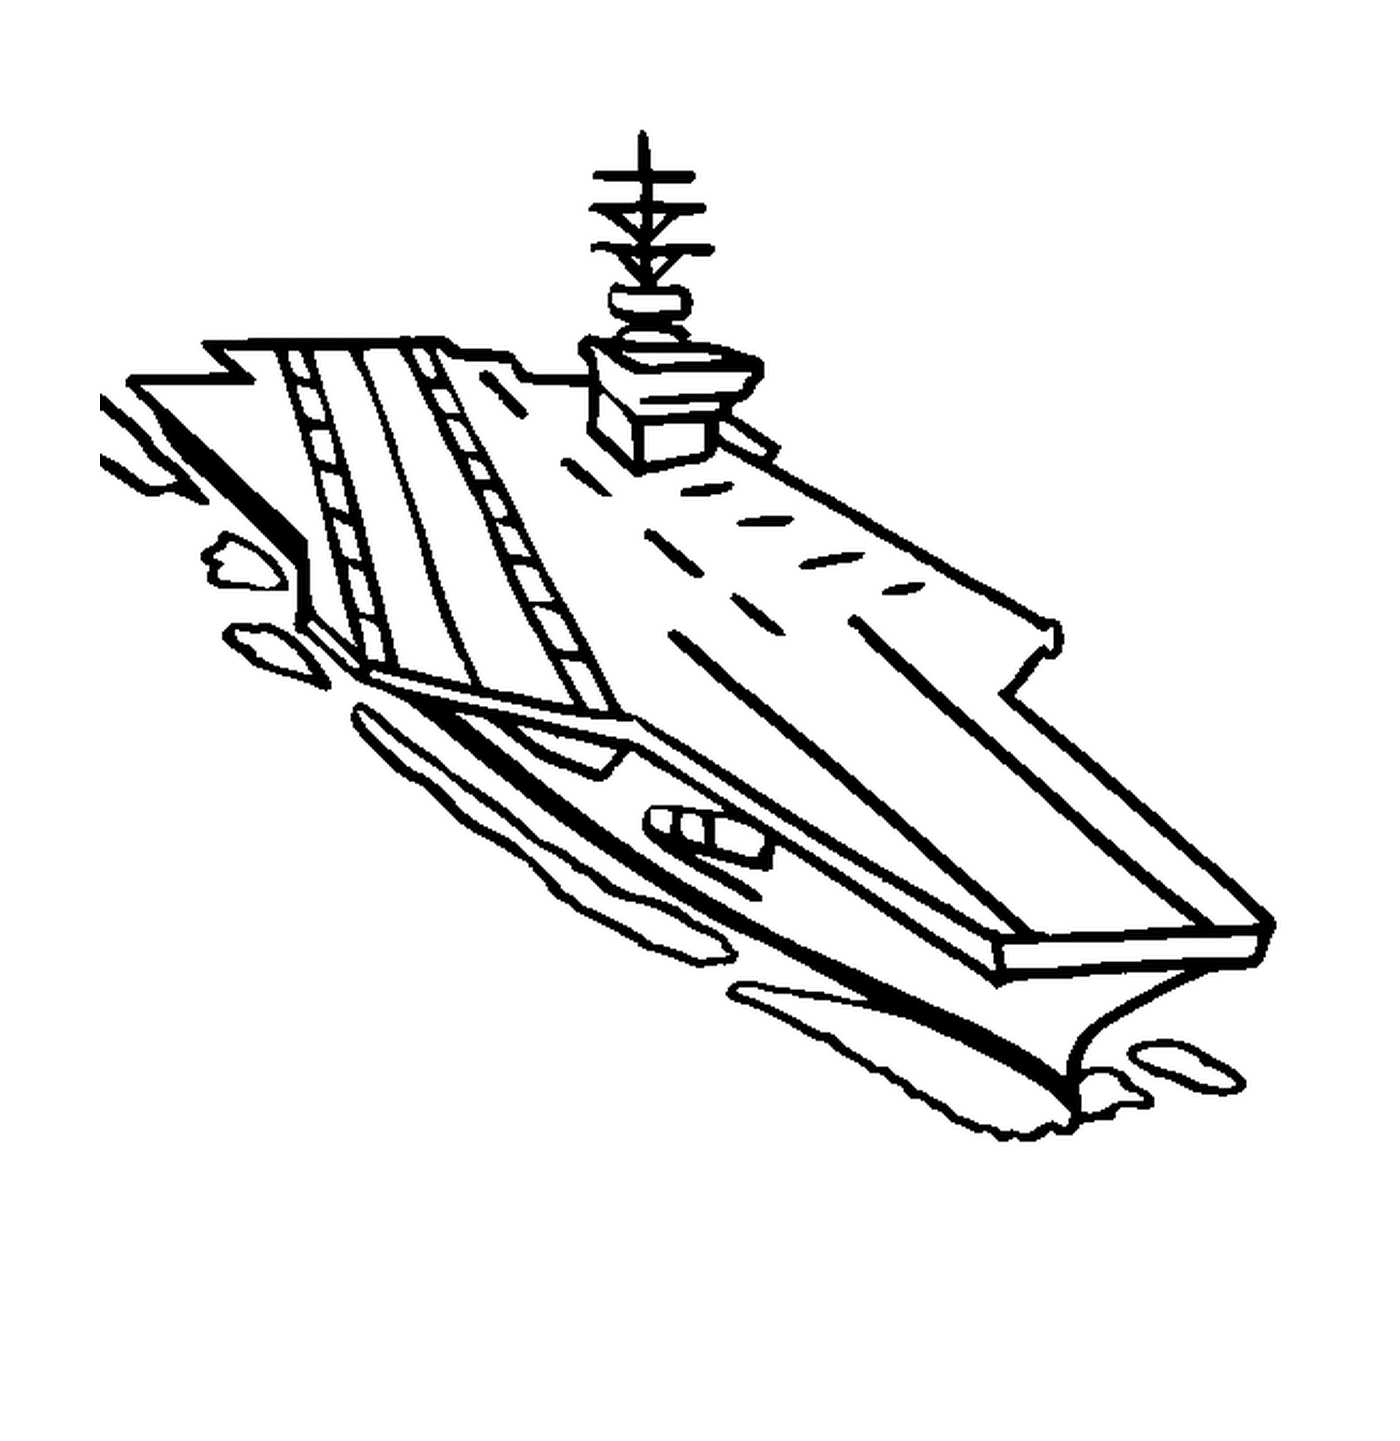   Un porte-avions sur l'eau 